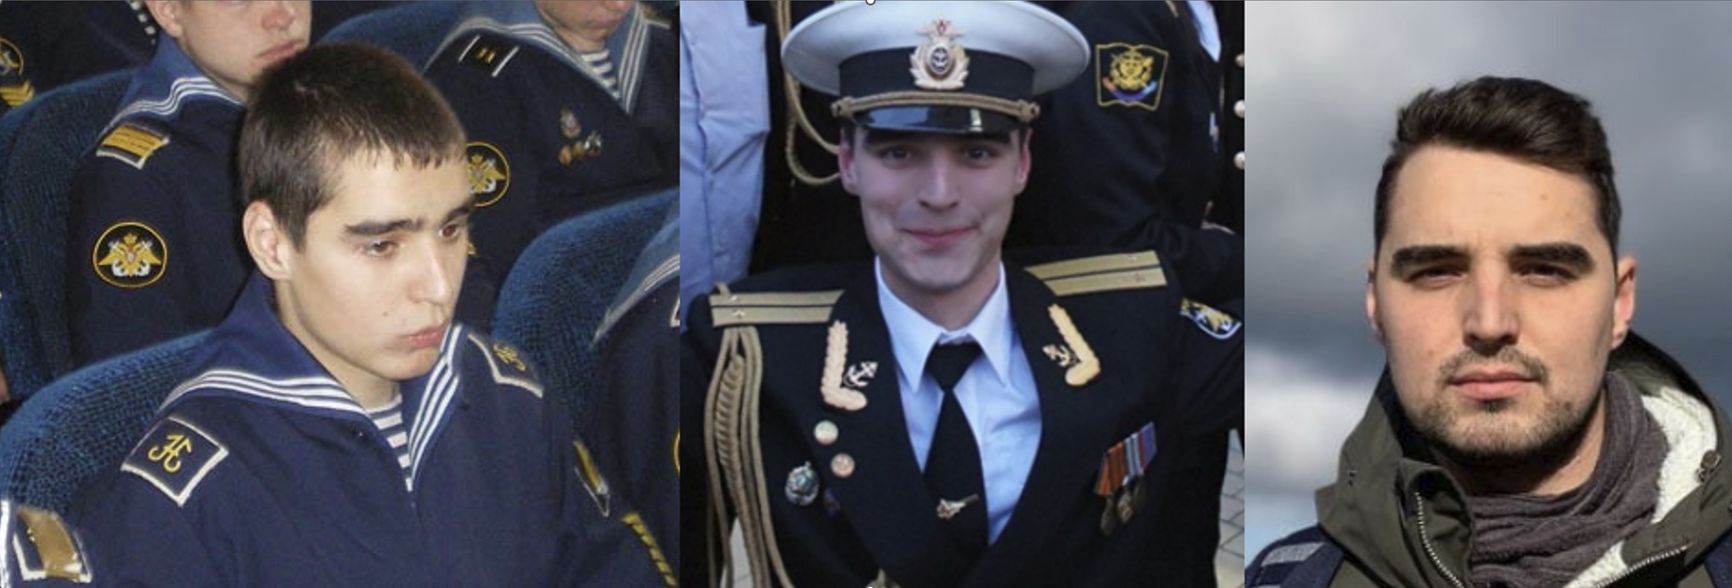 Матвей Любавин. Слева: выпускной 2009 года. В центре: 2014 год, выпуск Военно-морской академии. Справа: фото из резюме 2022 года